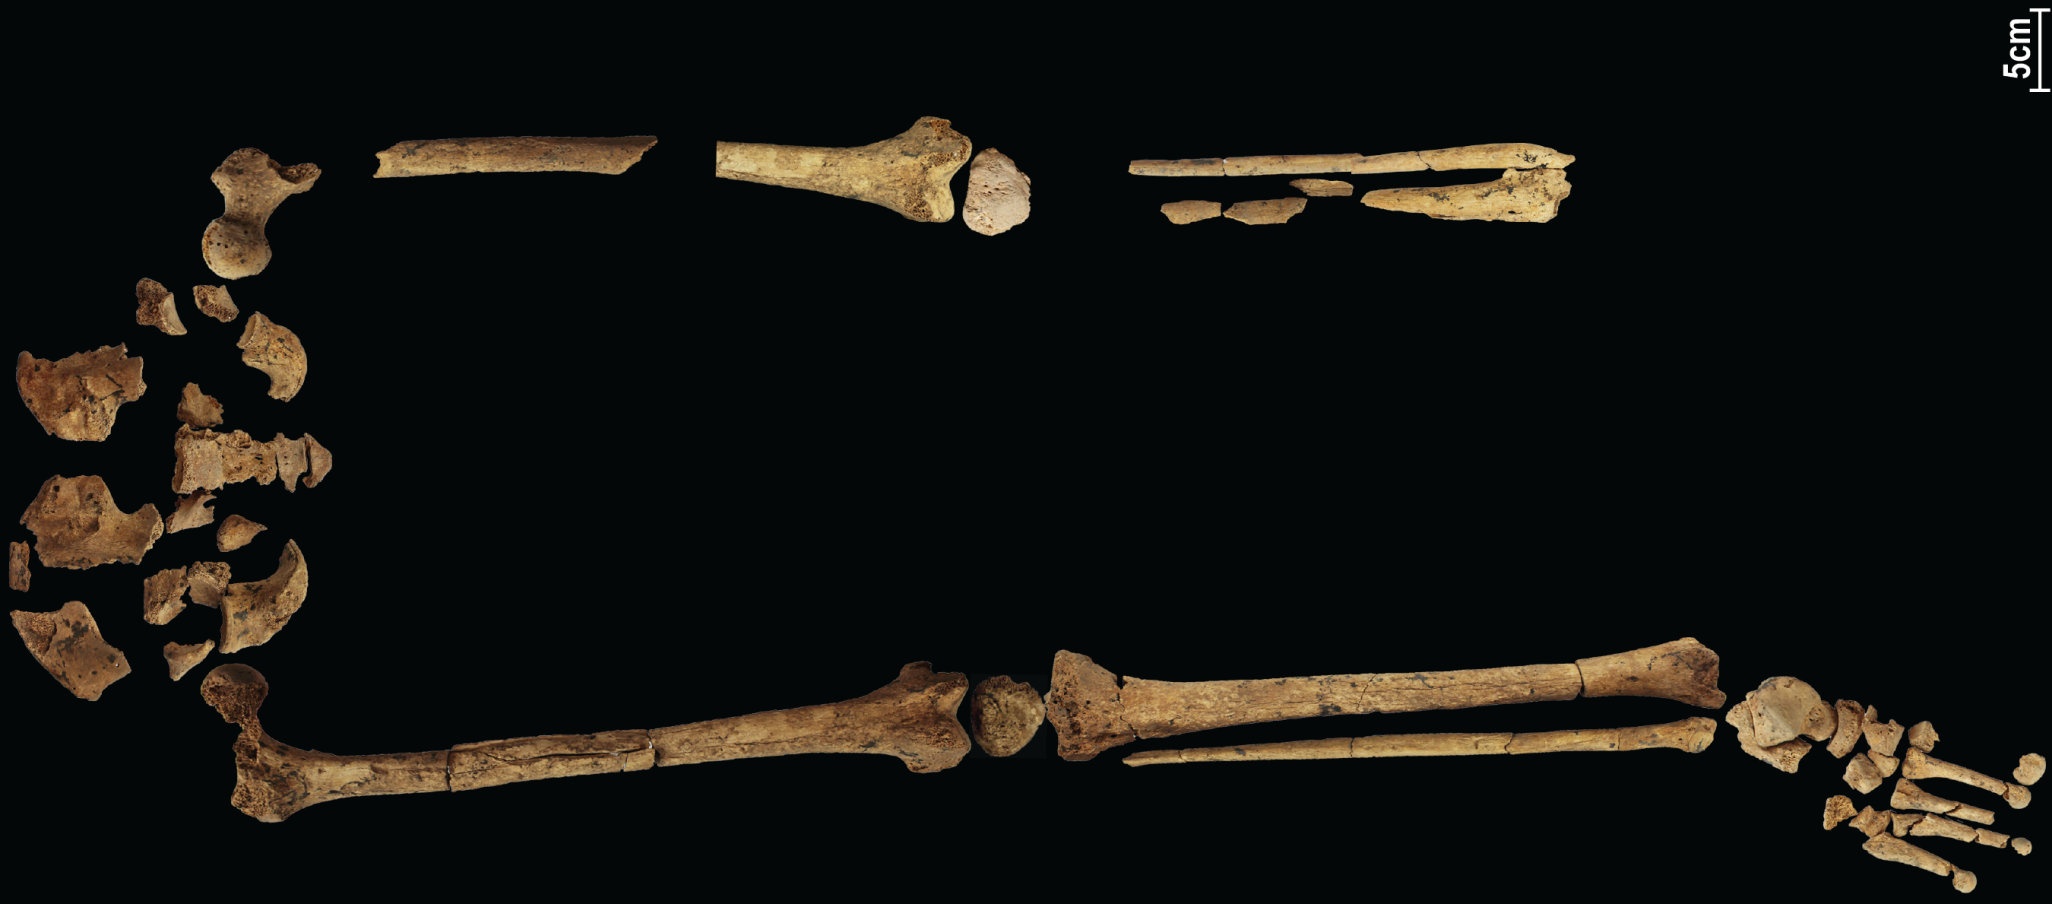 31,000 let staro okostje, ki prikazuje najzgodnejšo znano kompleksno operacijo, bi lahko ponovno napisalo zgodovino! 3